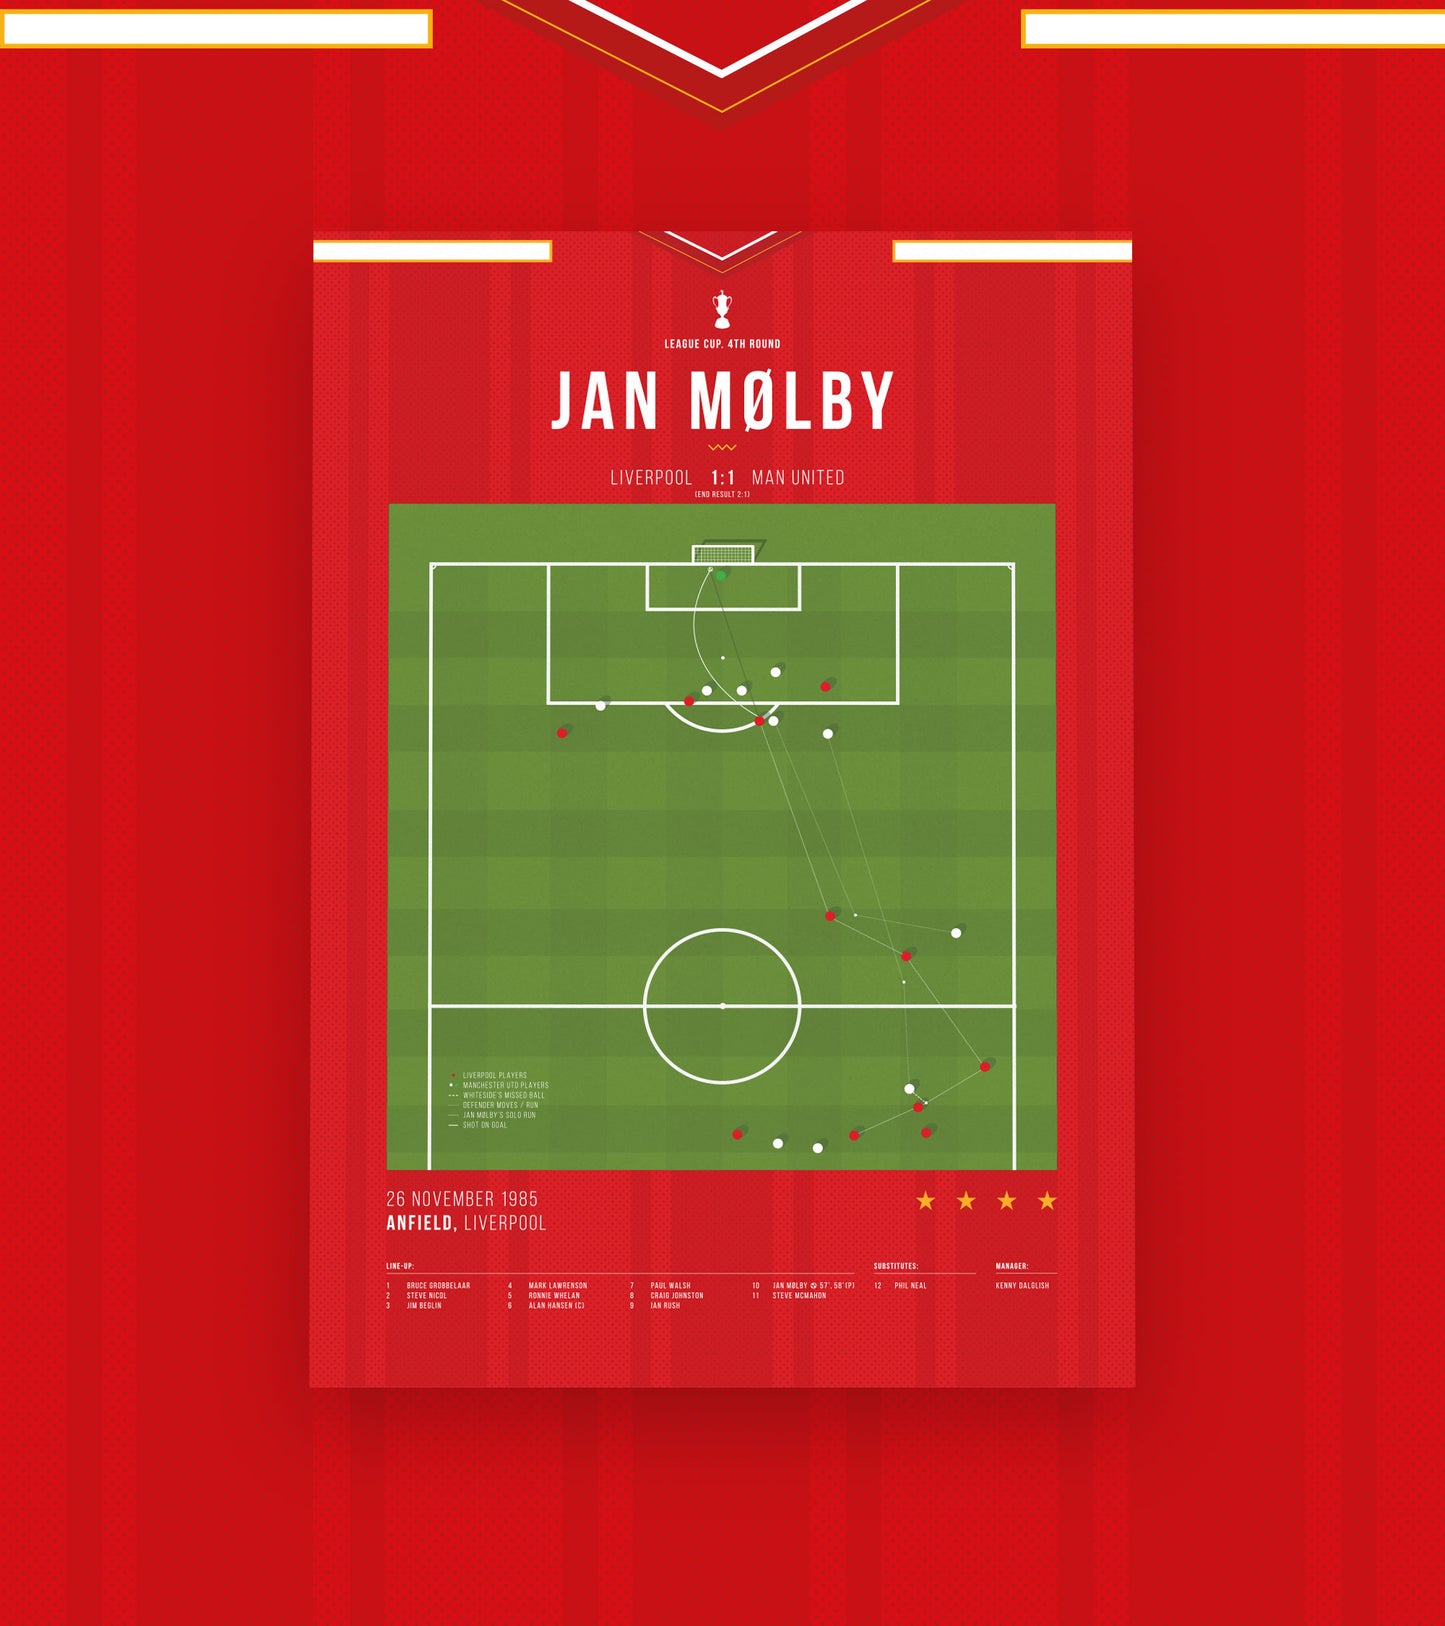 Jan Mølby Wondergoal vs Man United in 1985